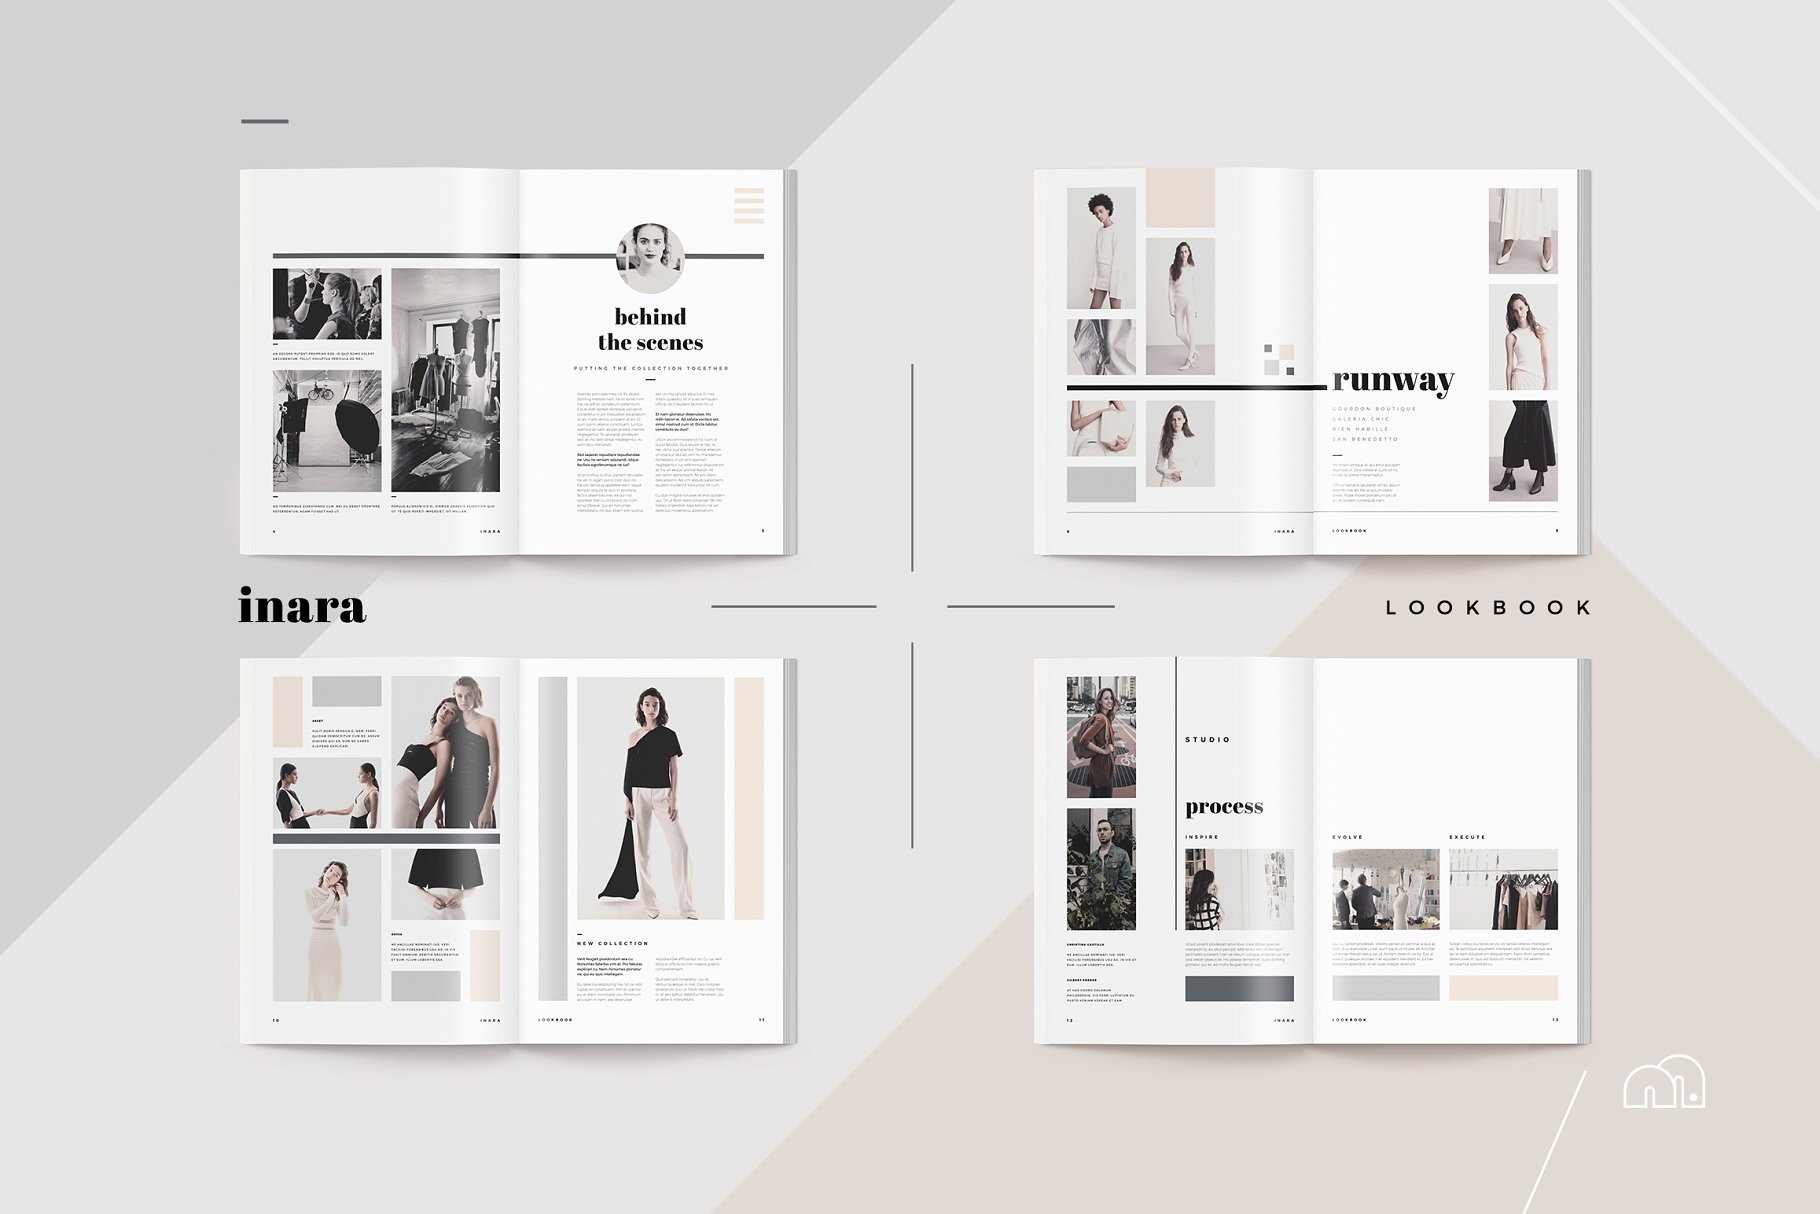 时尚服饰品牌款式演示画册模板 Lookbook – Inara插图(2)